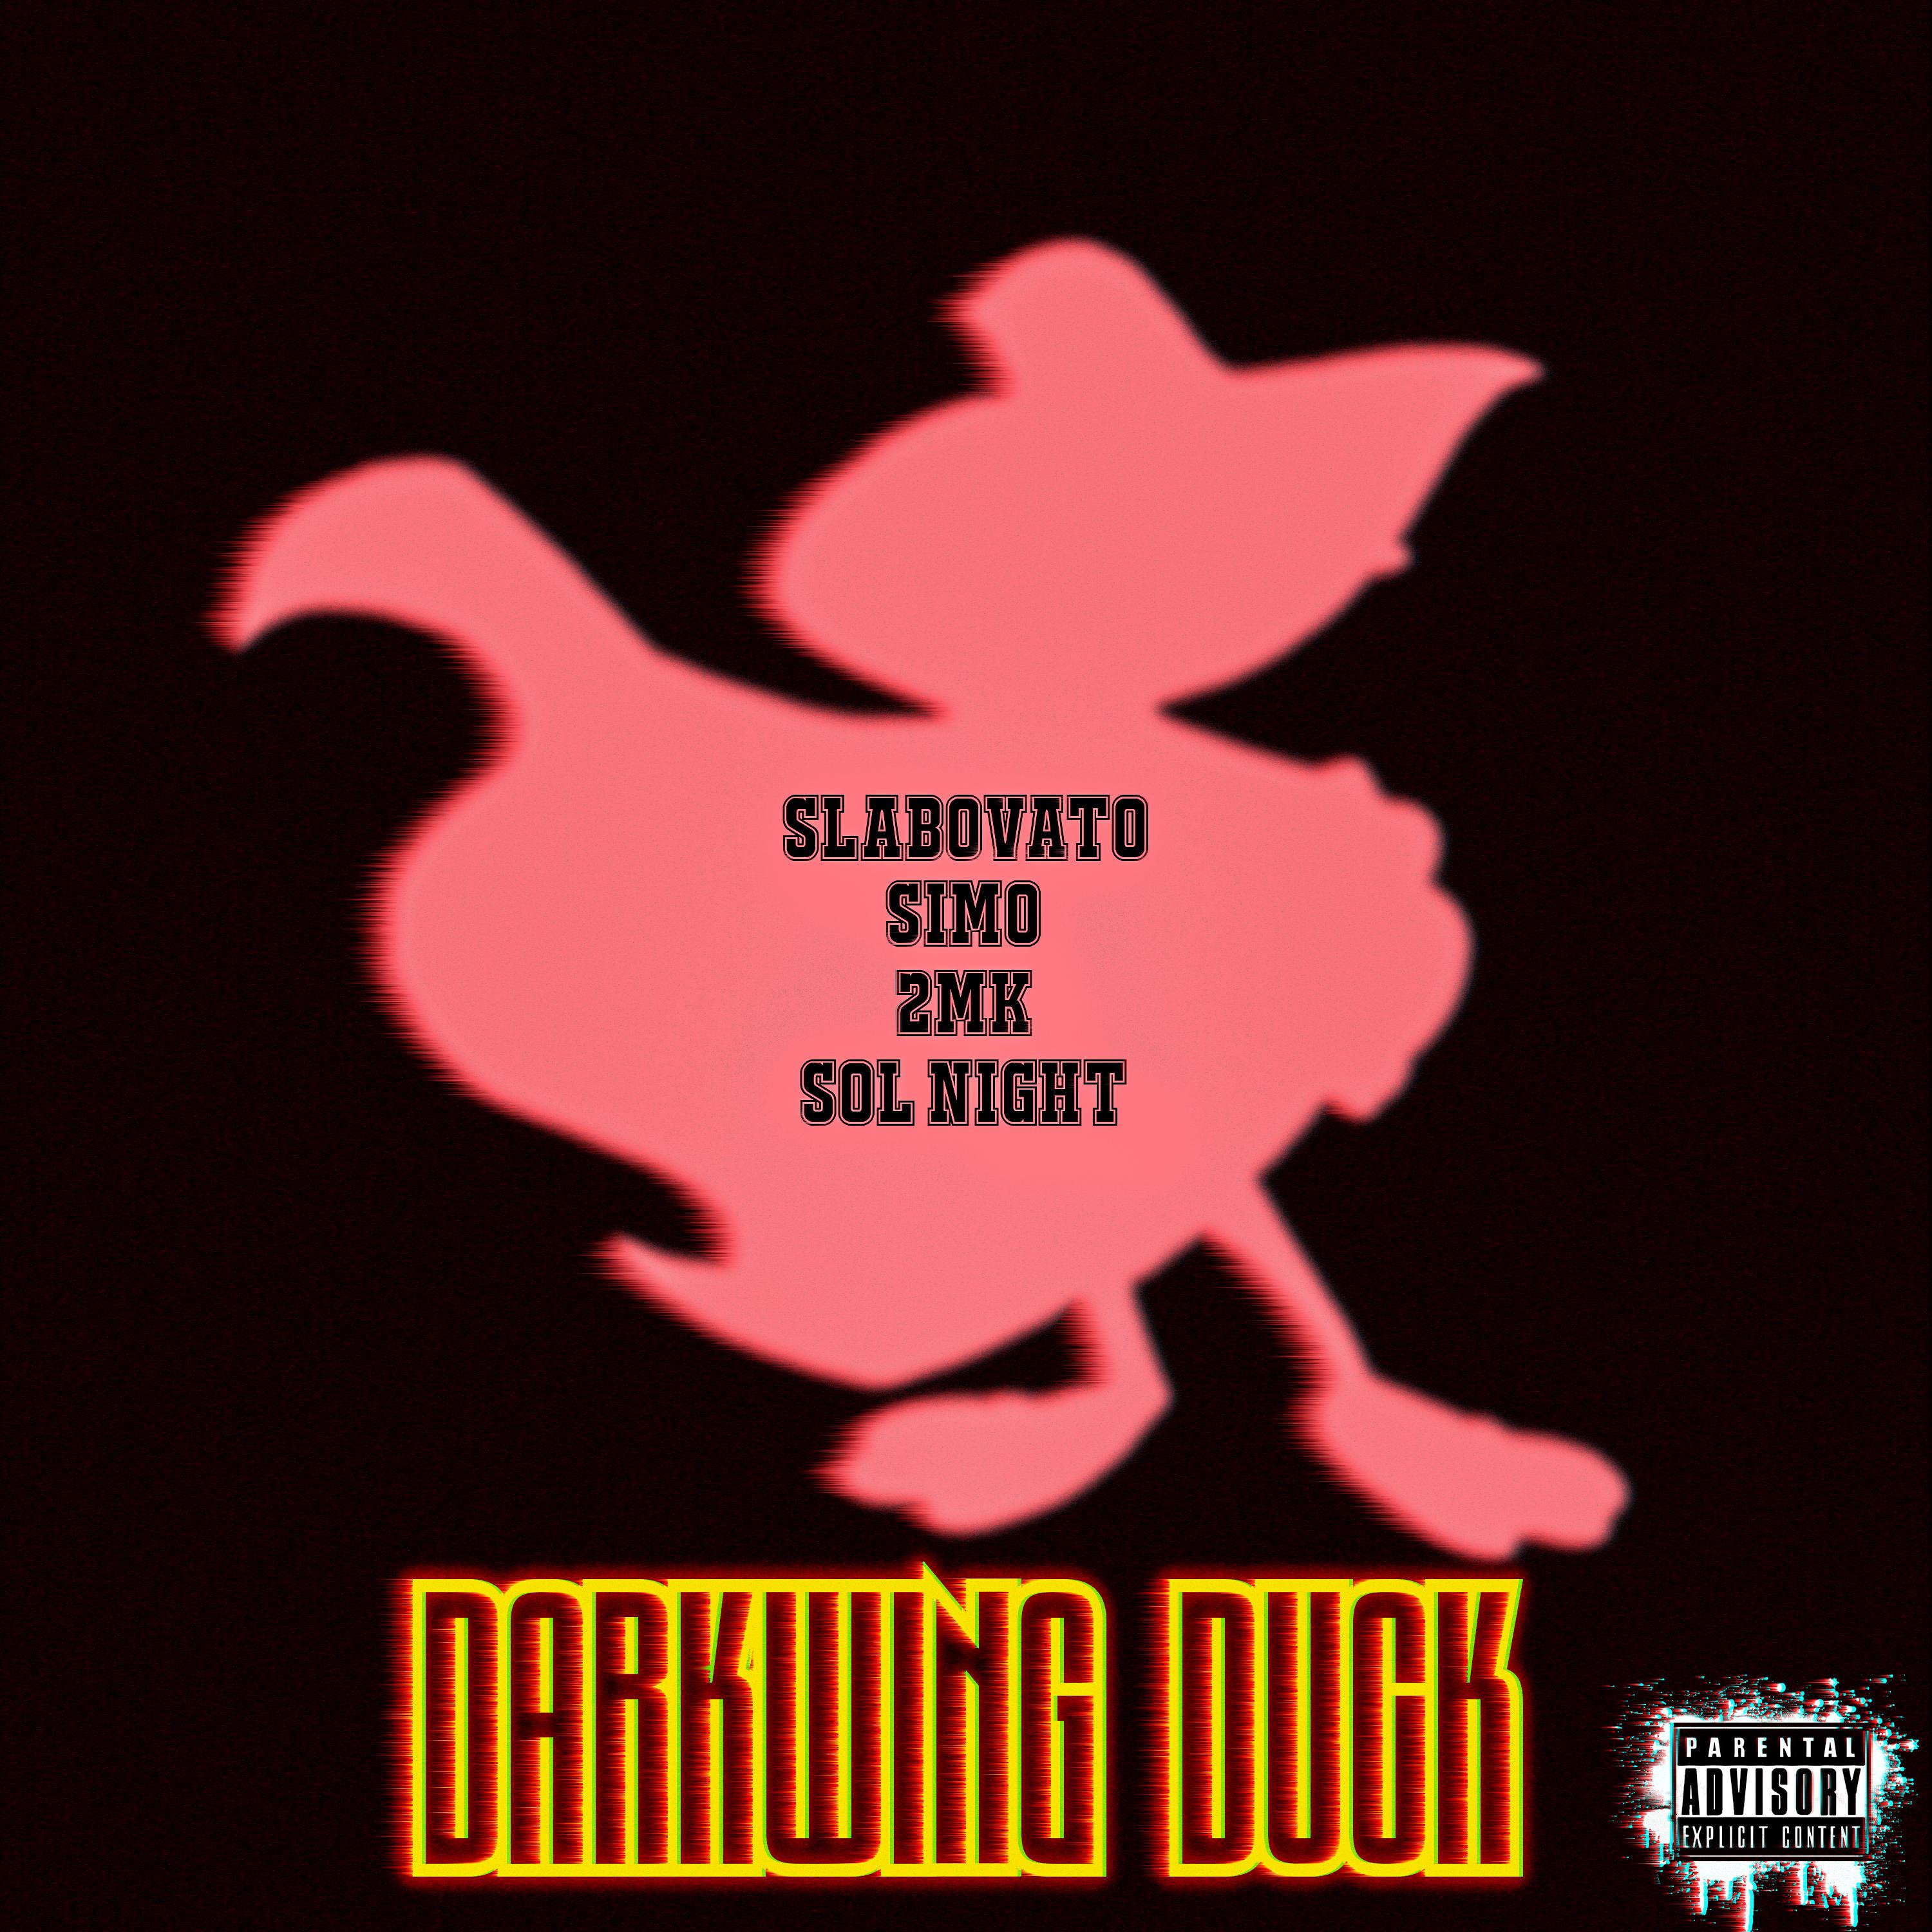 SLABOVATO - Darkwing Duck